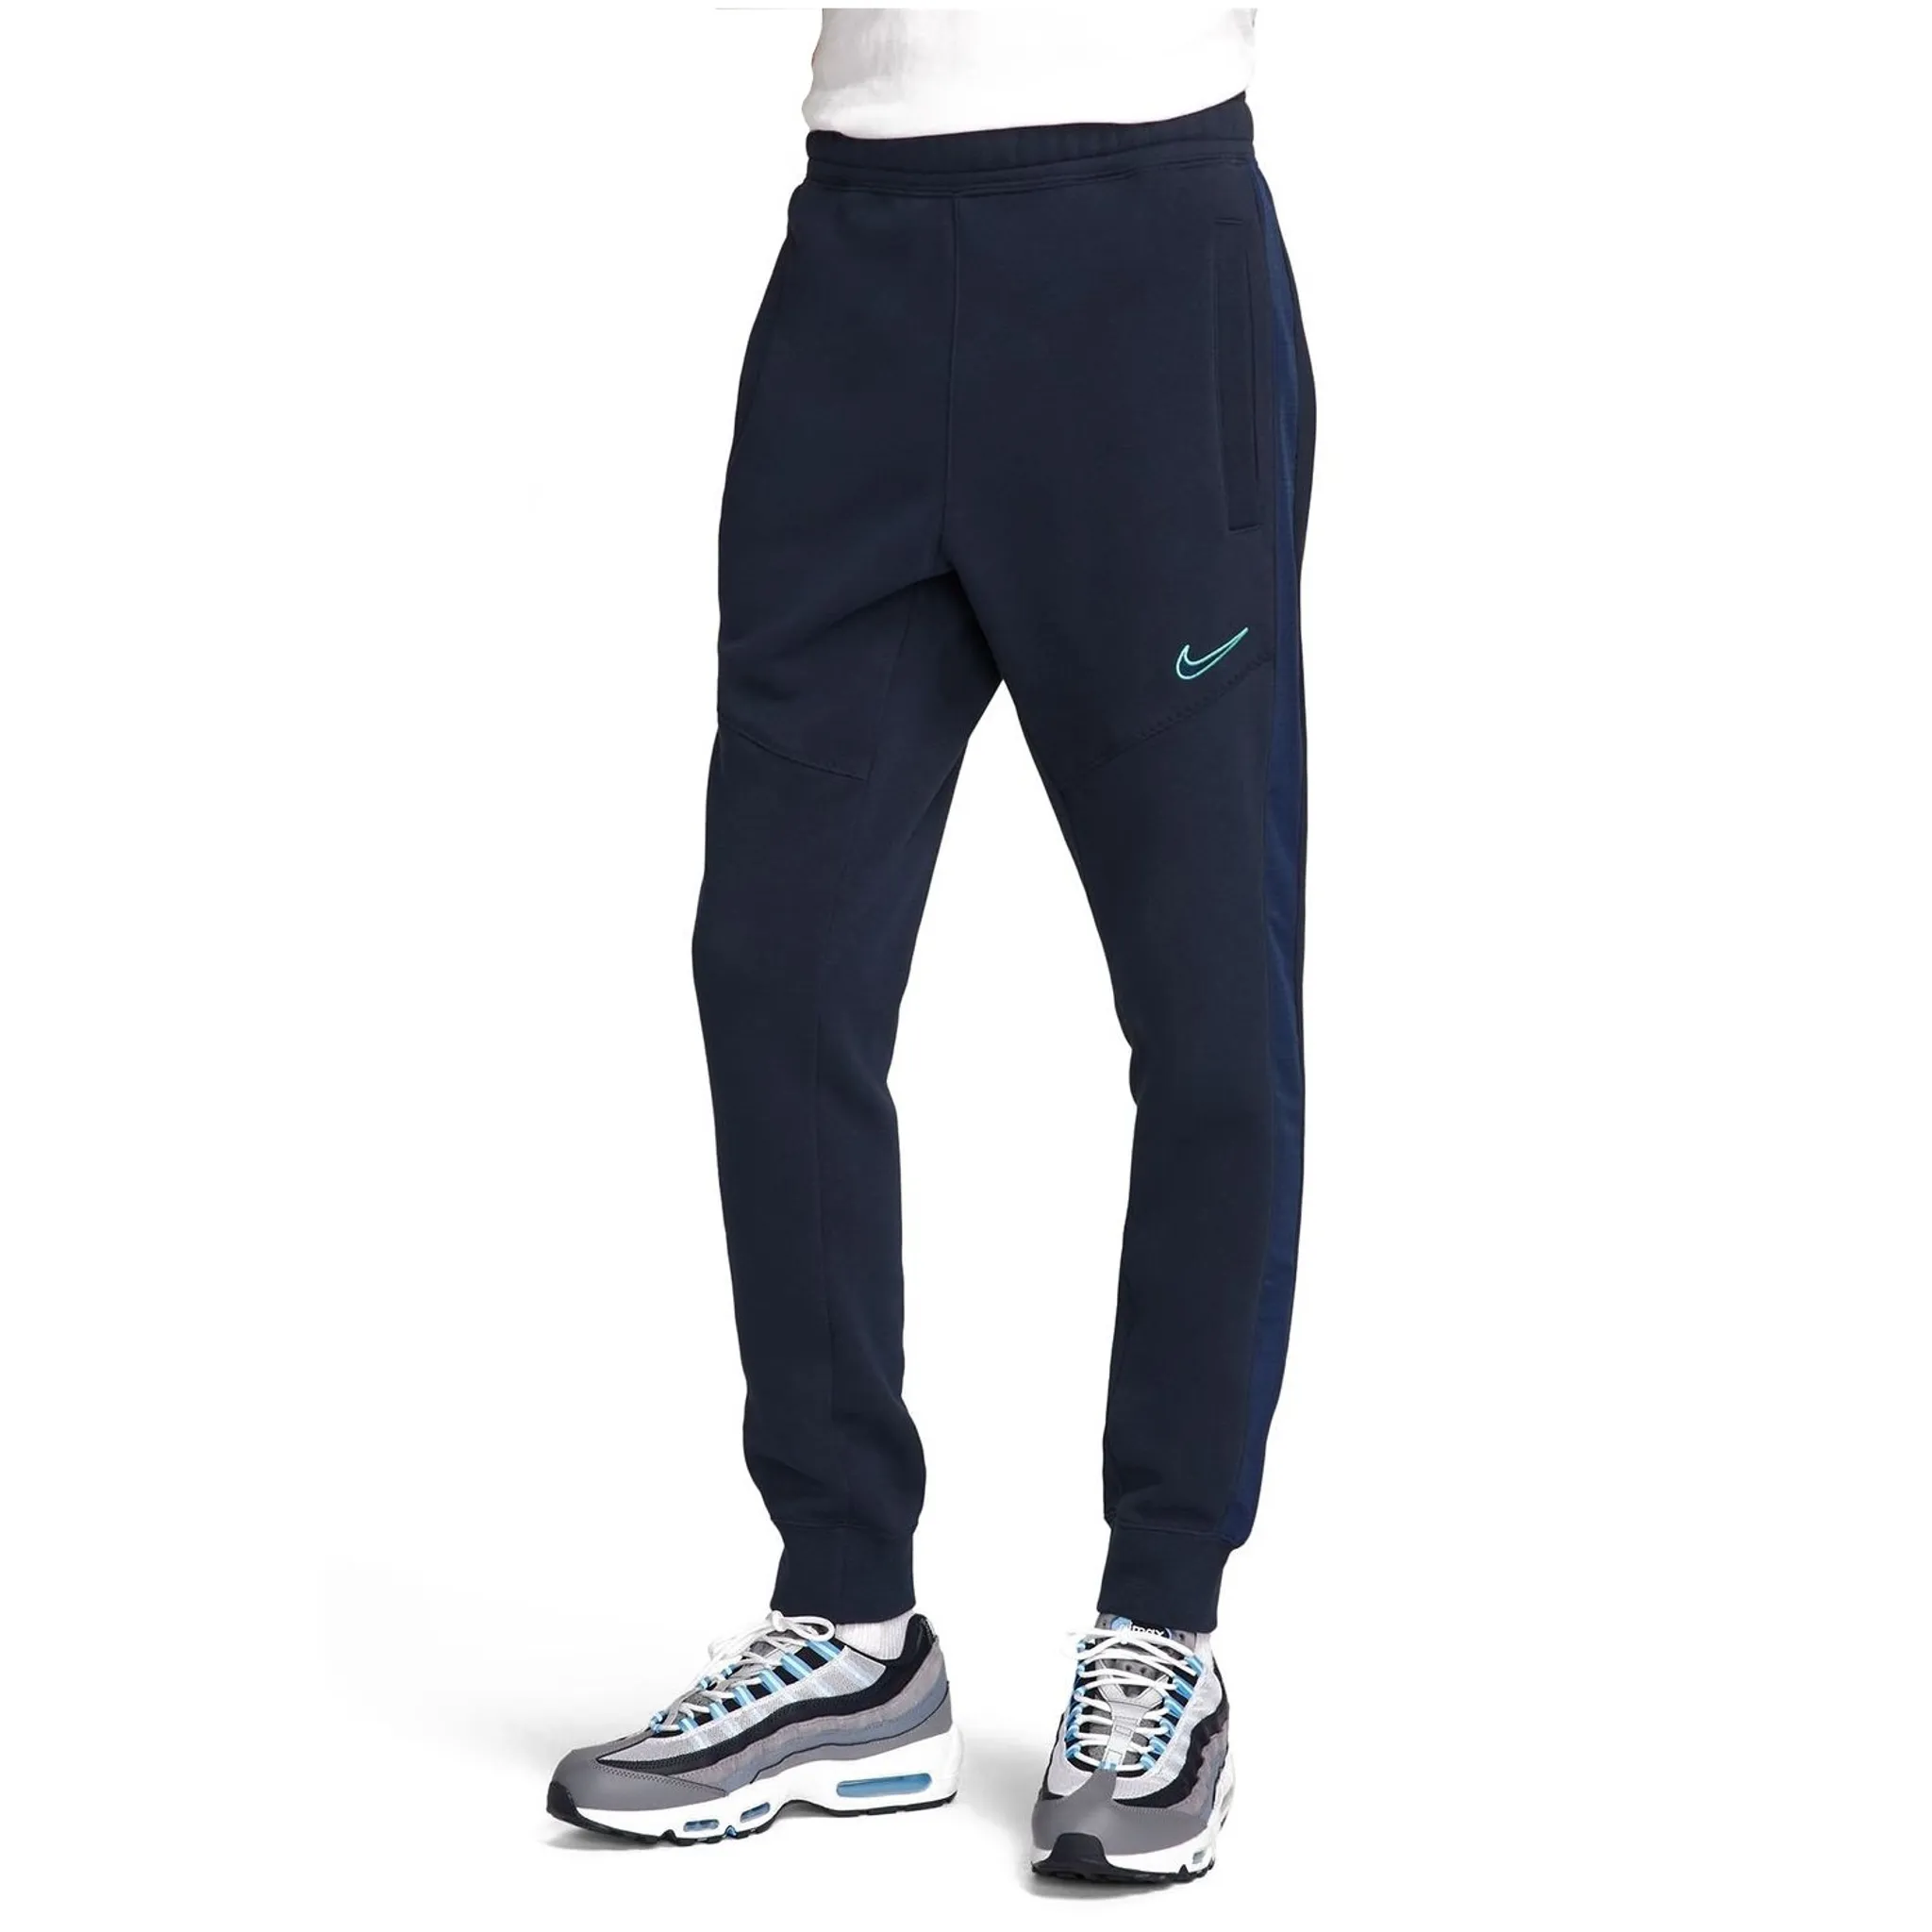 Jogginghose mit Fleeceinnenseite, Nike Herren